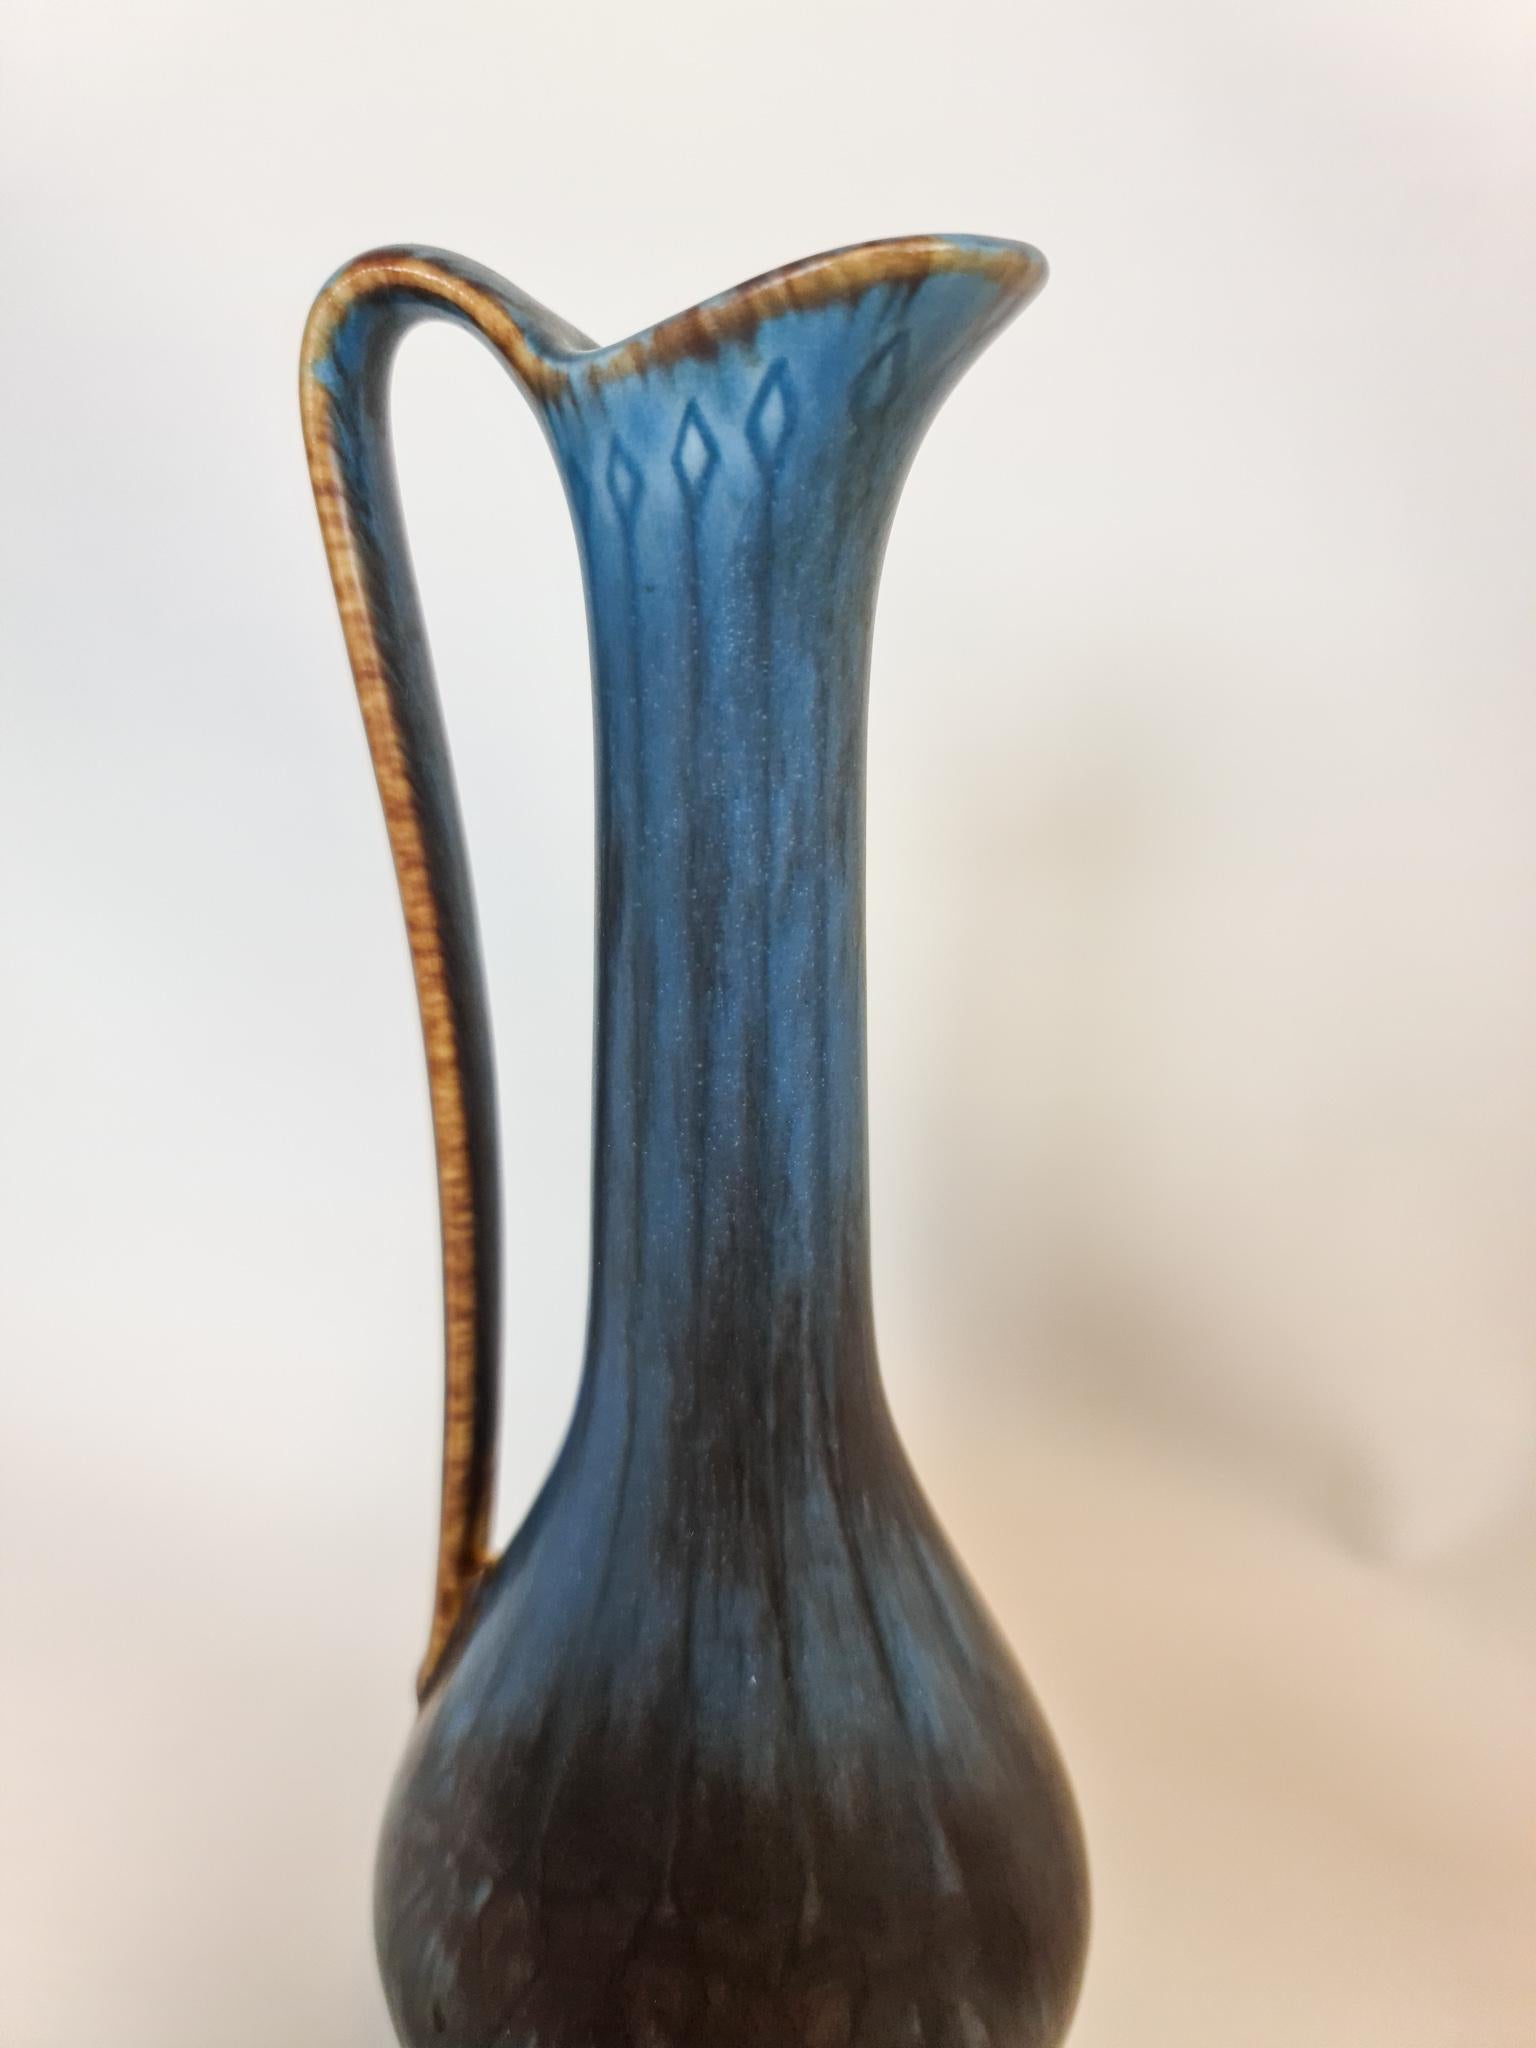 Midcentury Modern Set of 3 Ceramic Vases Rörstrand Gunnar Nylund, Sweden For Sale 5